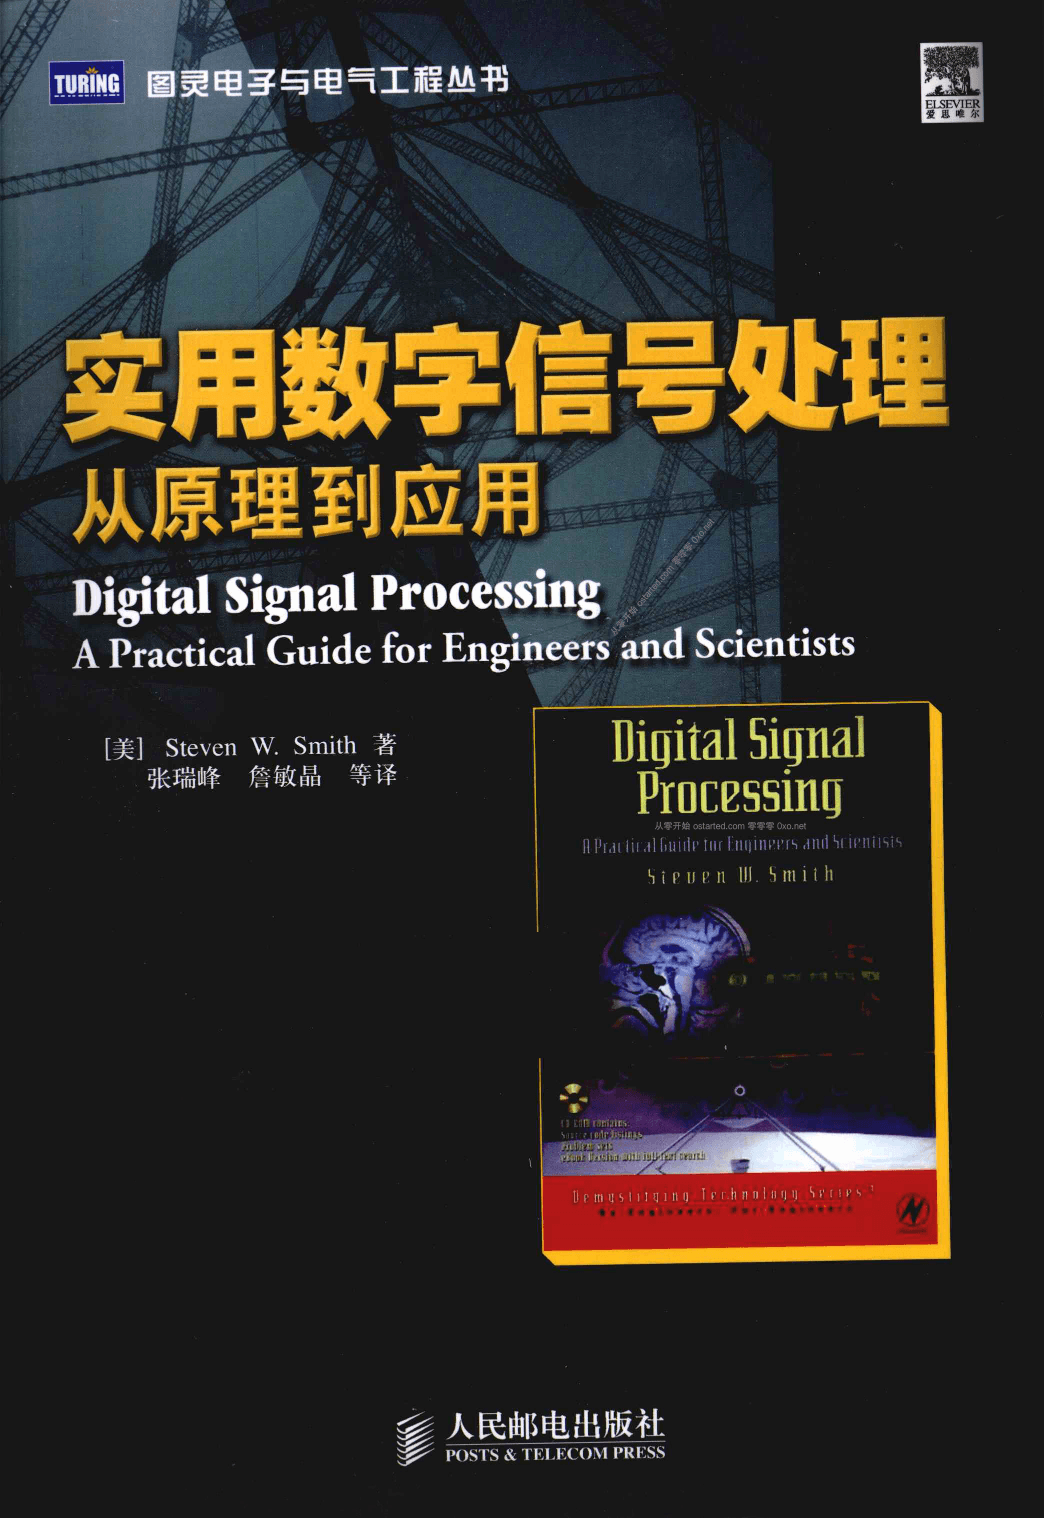 《实用数字信号处理: 从原理到应用》绝版数字信号处理书籍 PDF 下载 - 第2张图片